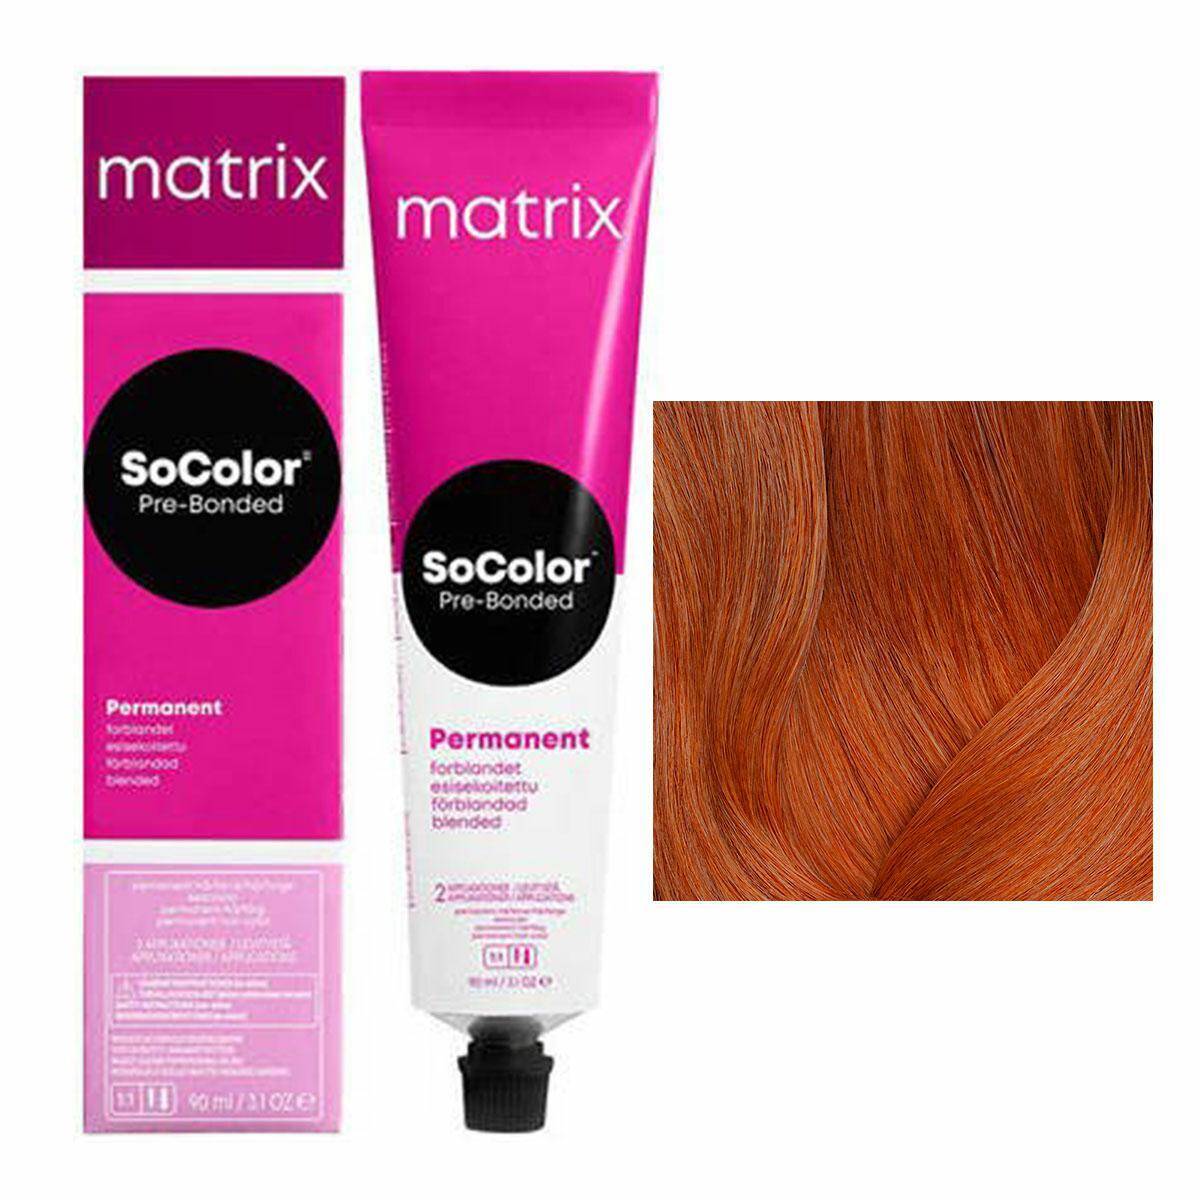 Matrix SoColor Pre-Bonded Farba do włosów - 8CC Intensywnie miedziany jasny blond, trwała koloryzacja 90ml